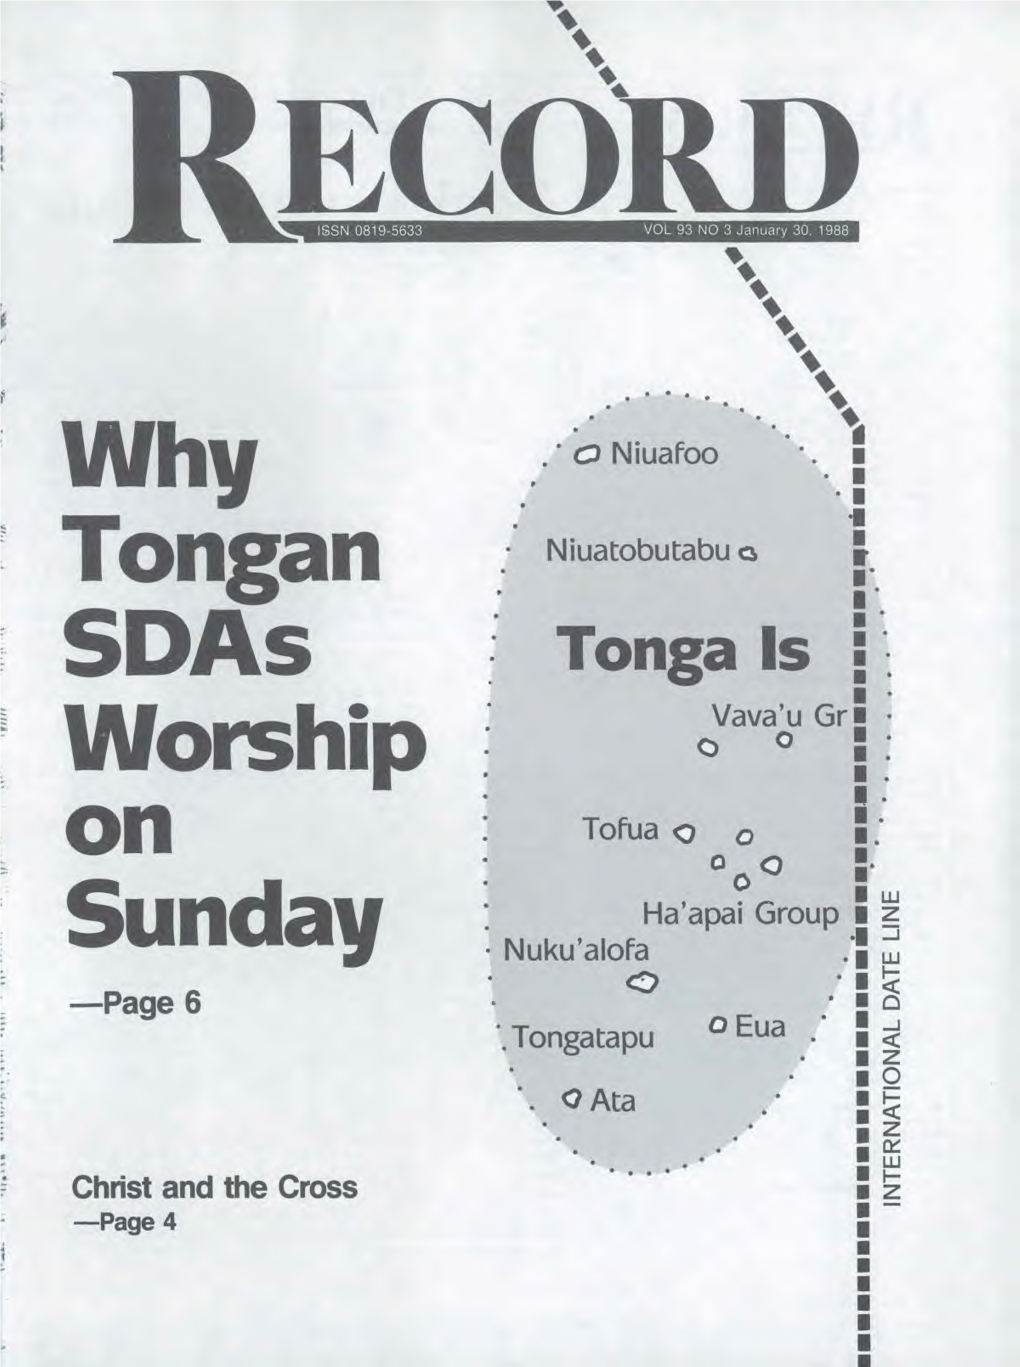 Why Tongan Sdas Worship on Sunday